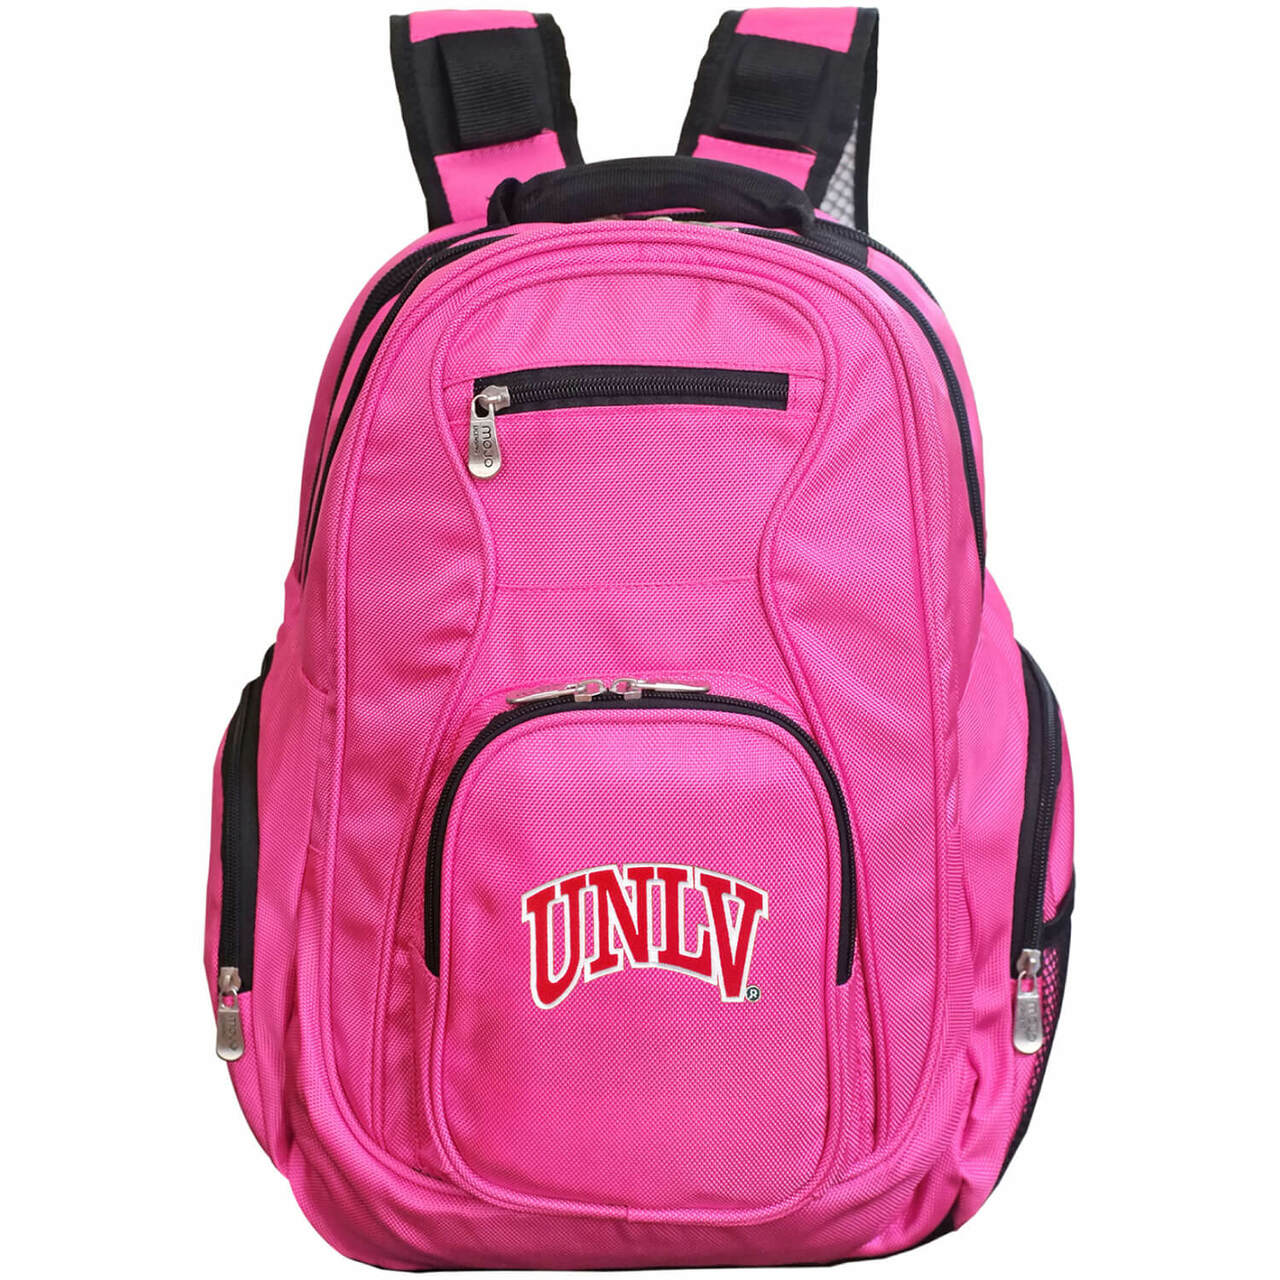 UNLV Rebels Laptop Backpack Pink